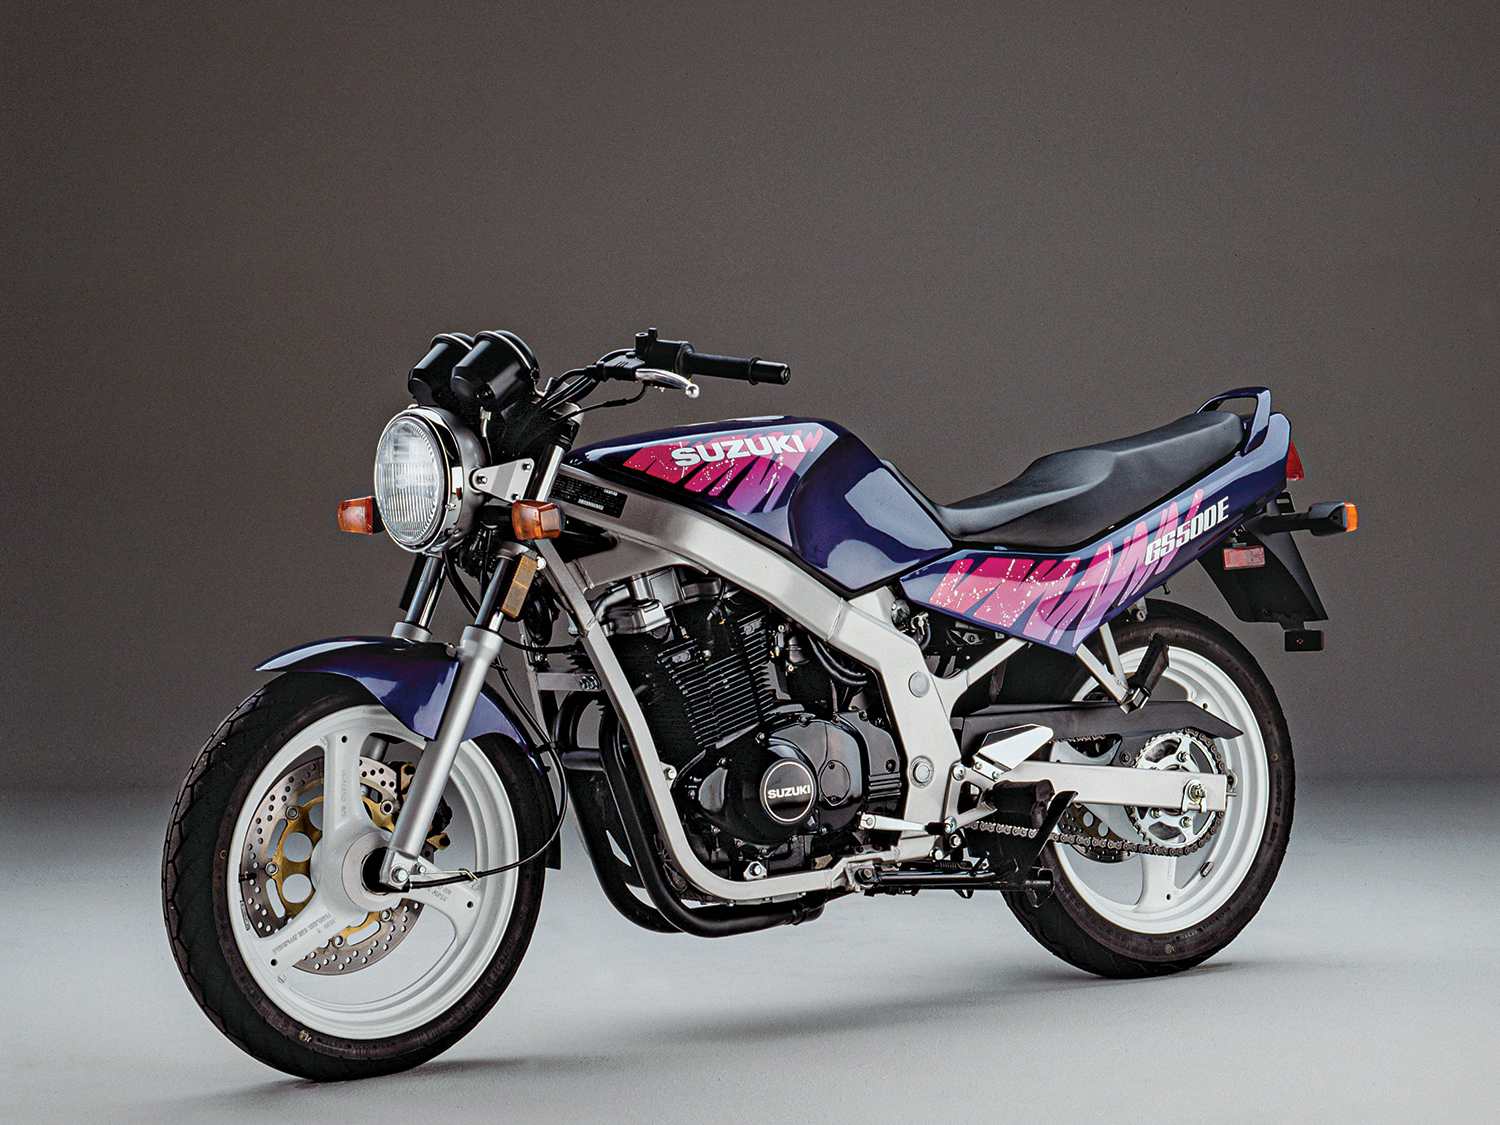 Used Bike Bargain: The Suzuki GS500